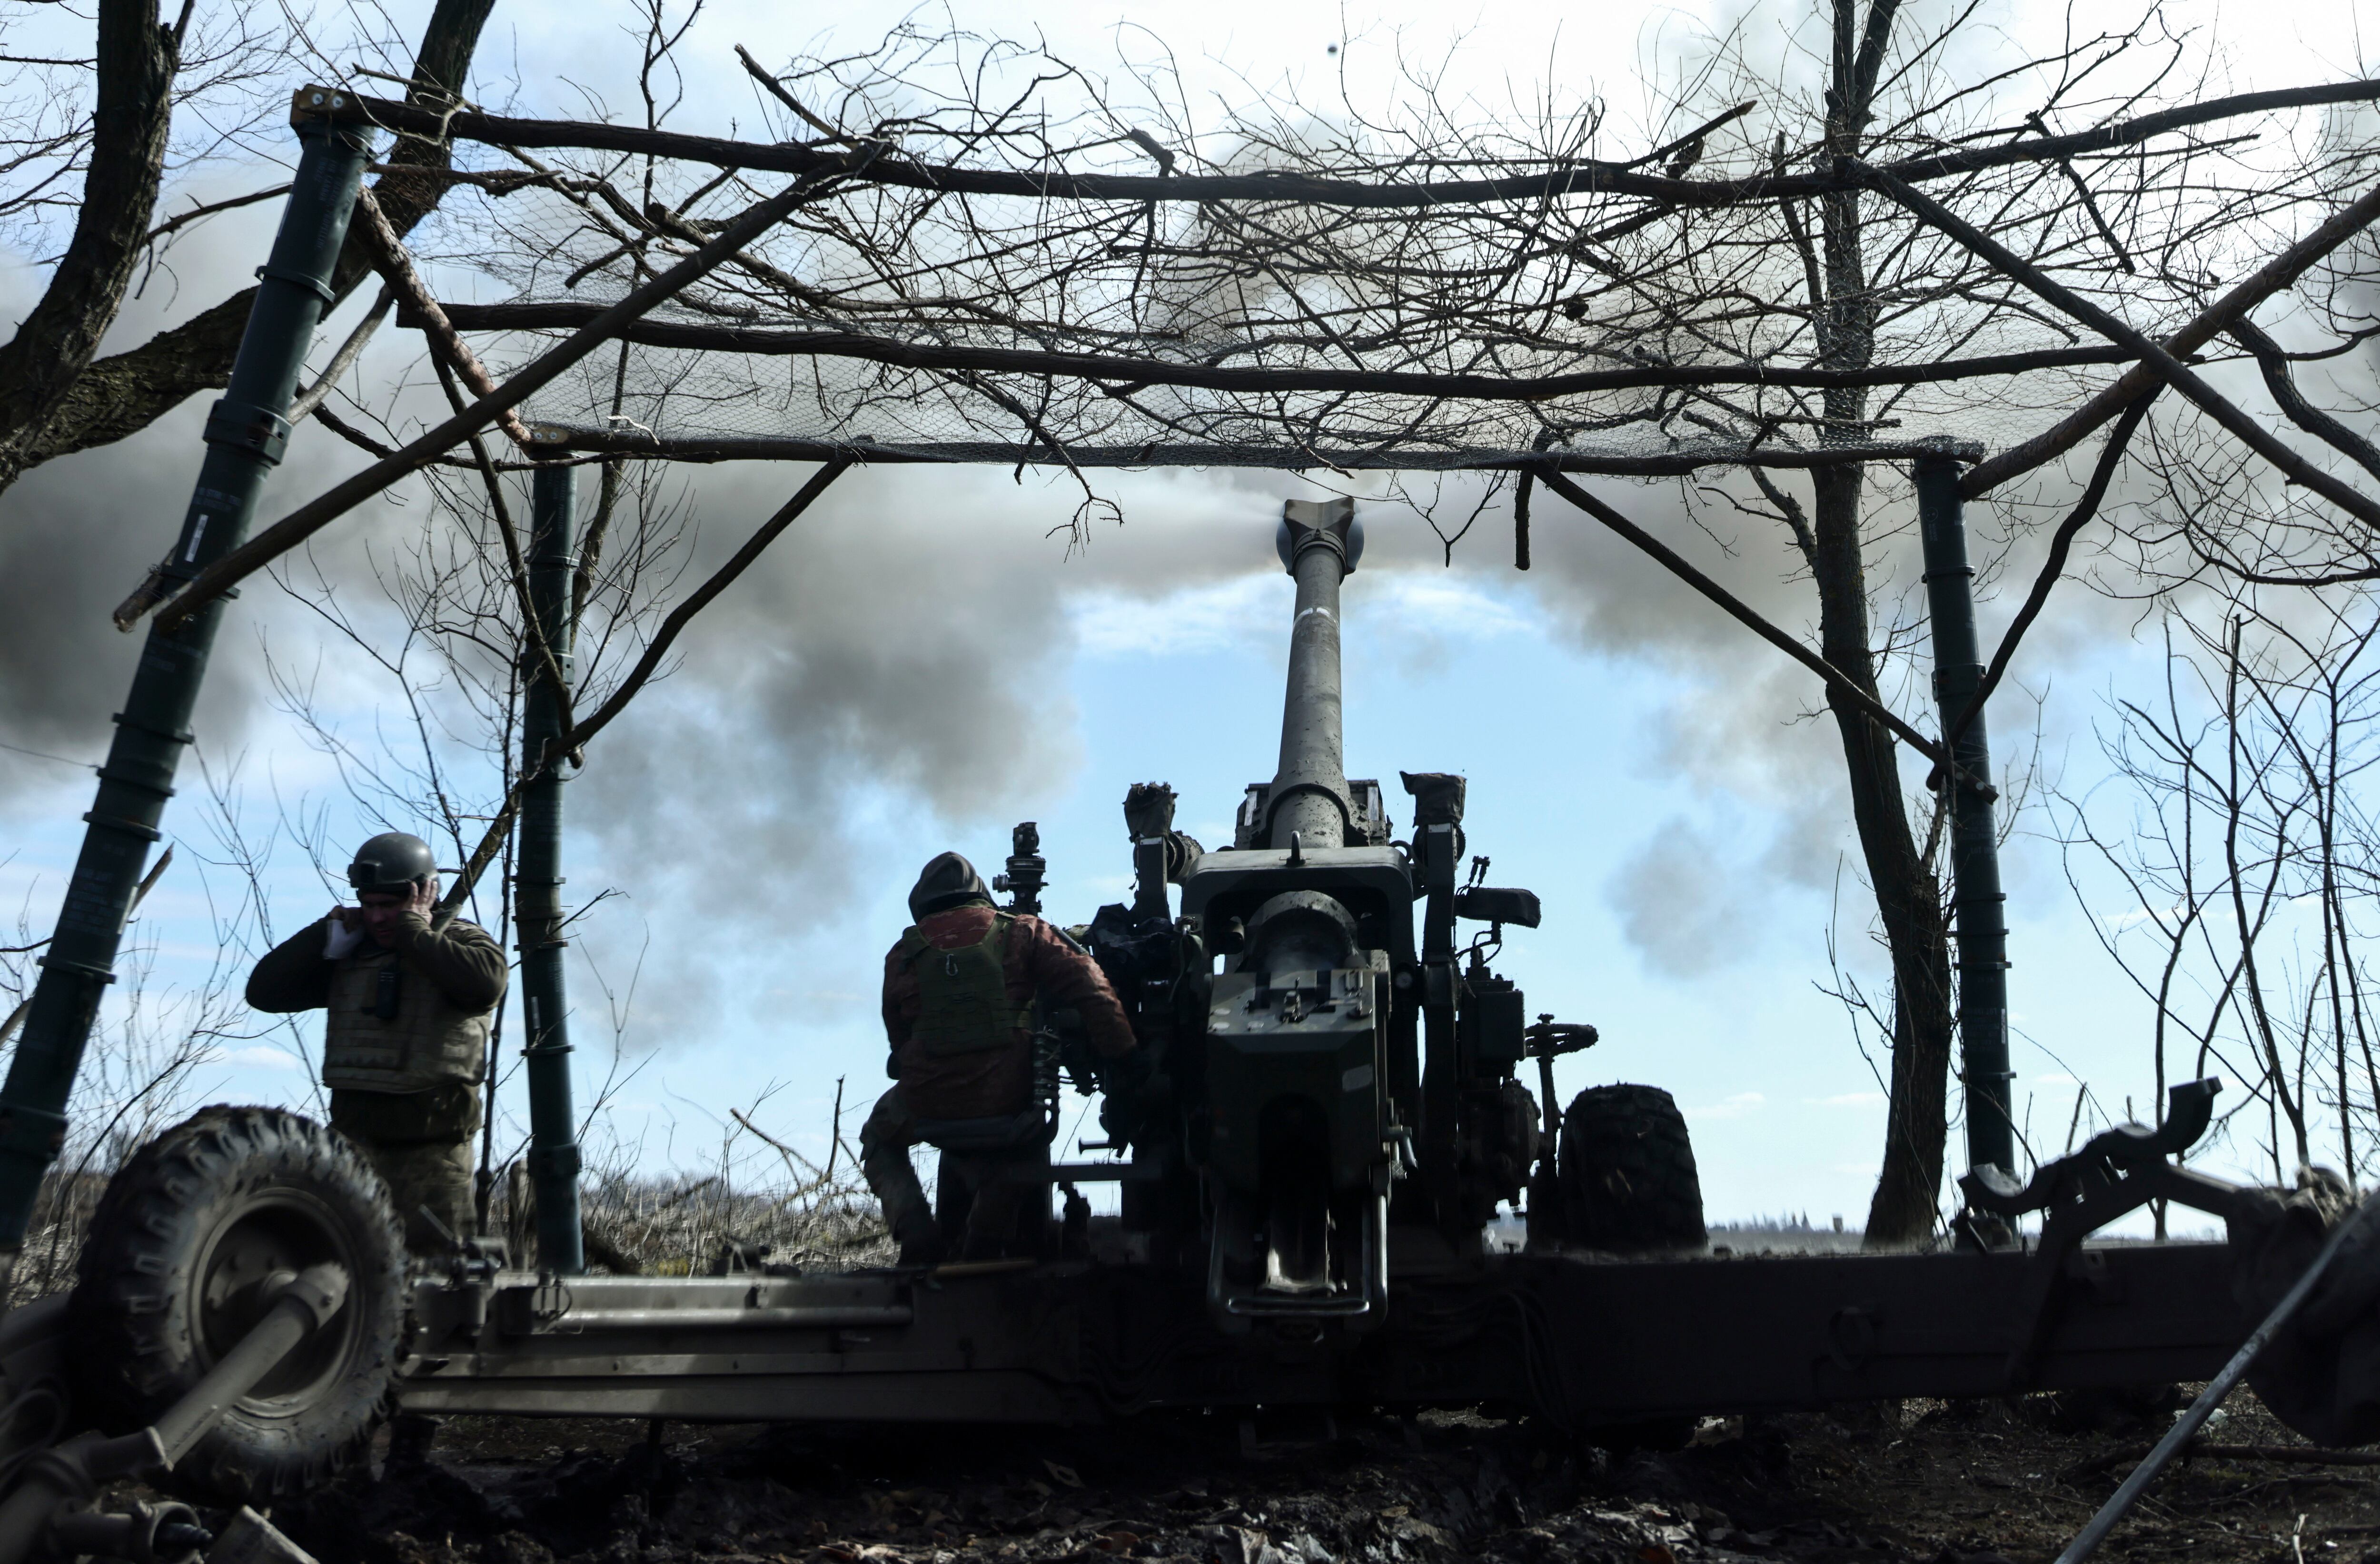 Imagen de archivo de fuerzas ucranianas abriendo fuego de artillería contra las tropas rusas. (EFE/EPA/STR)
